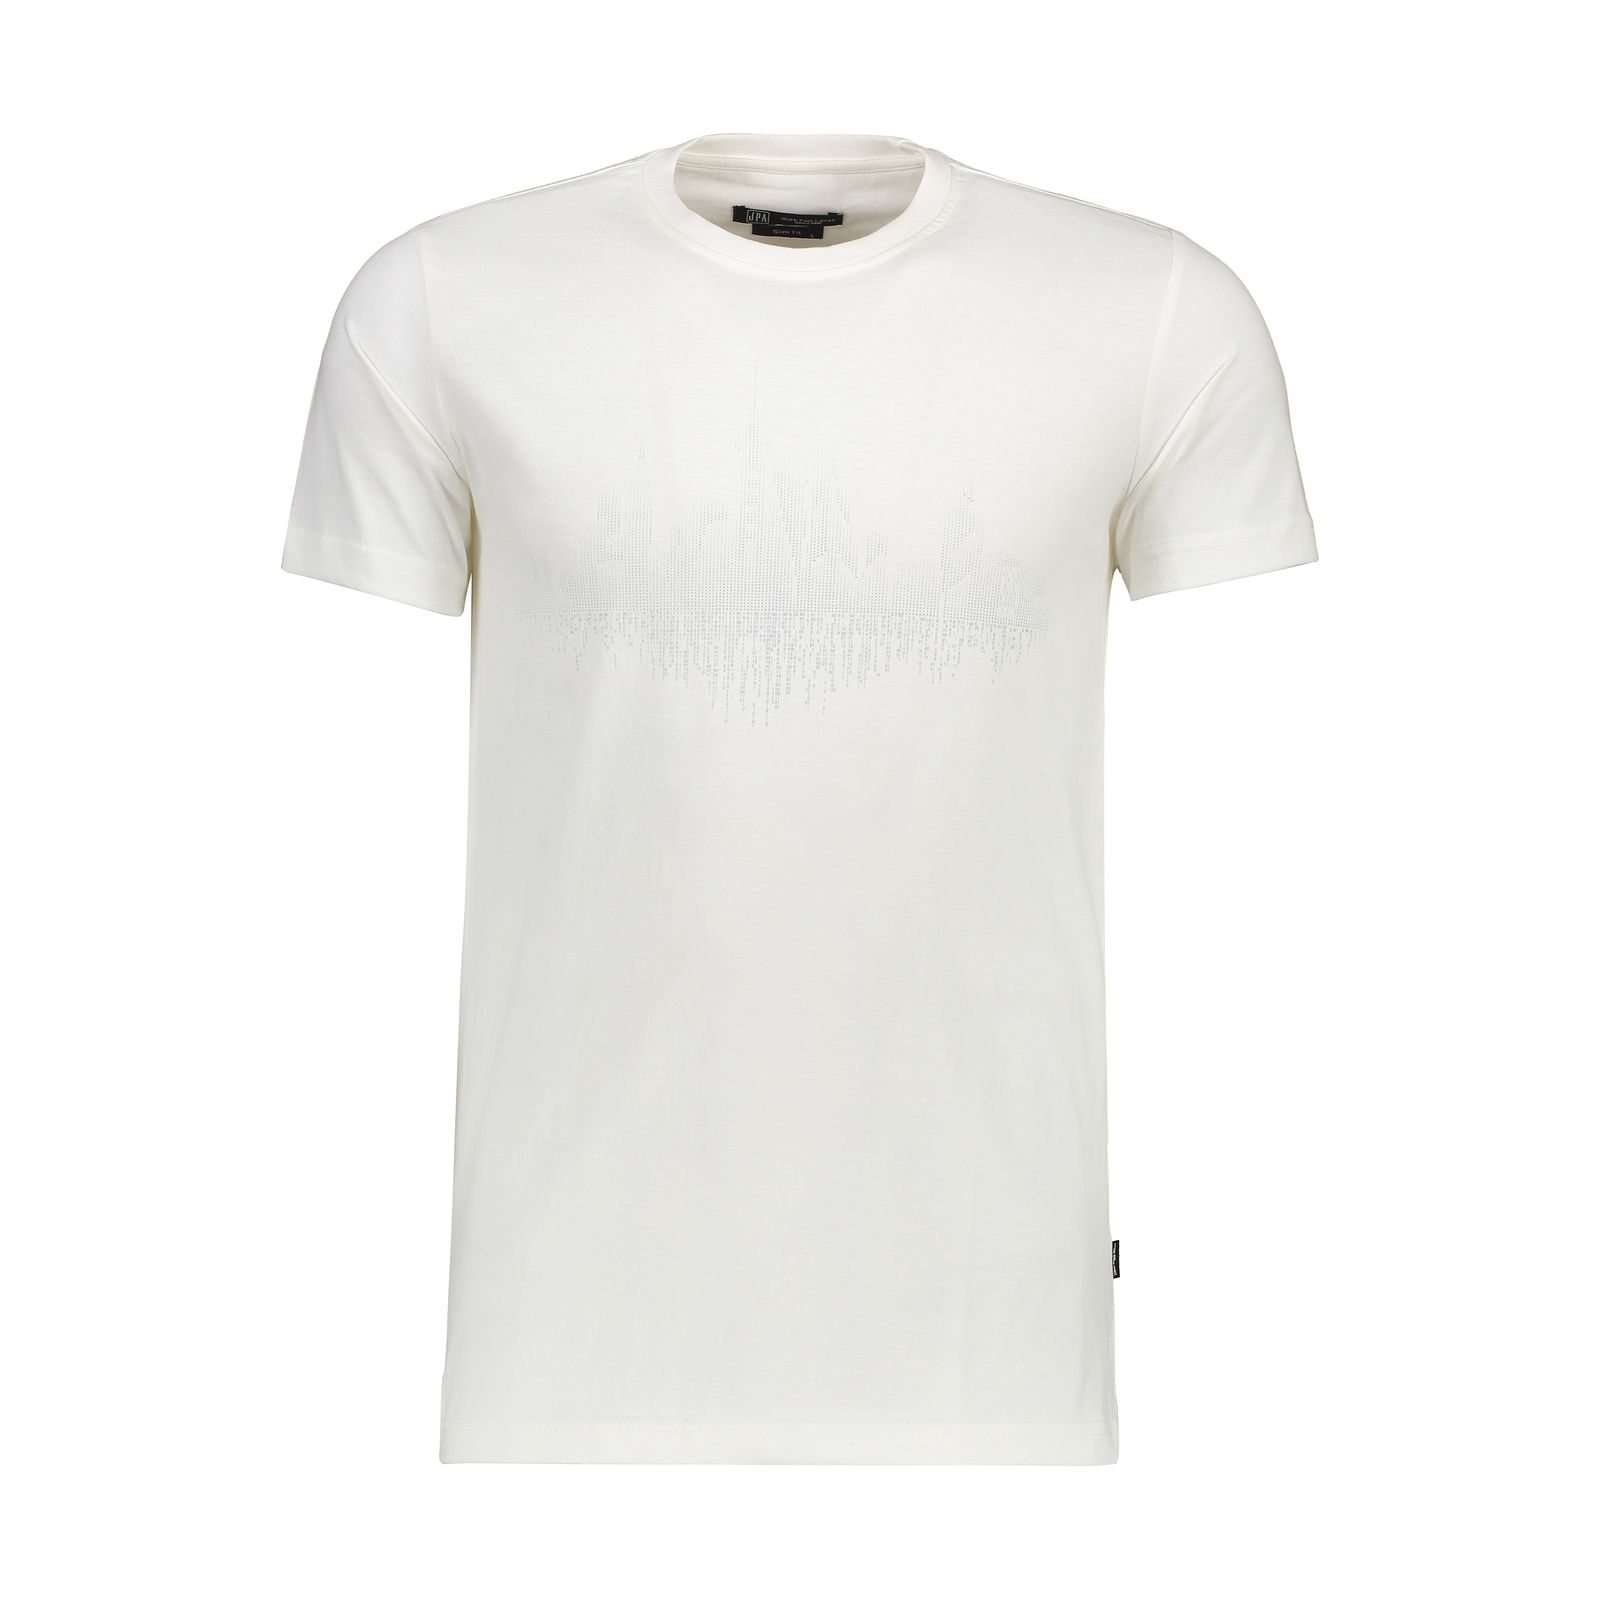 تی شرت مردانه جامه پوش آرا مدل 4011018200-05 -  - 1